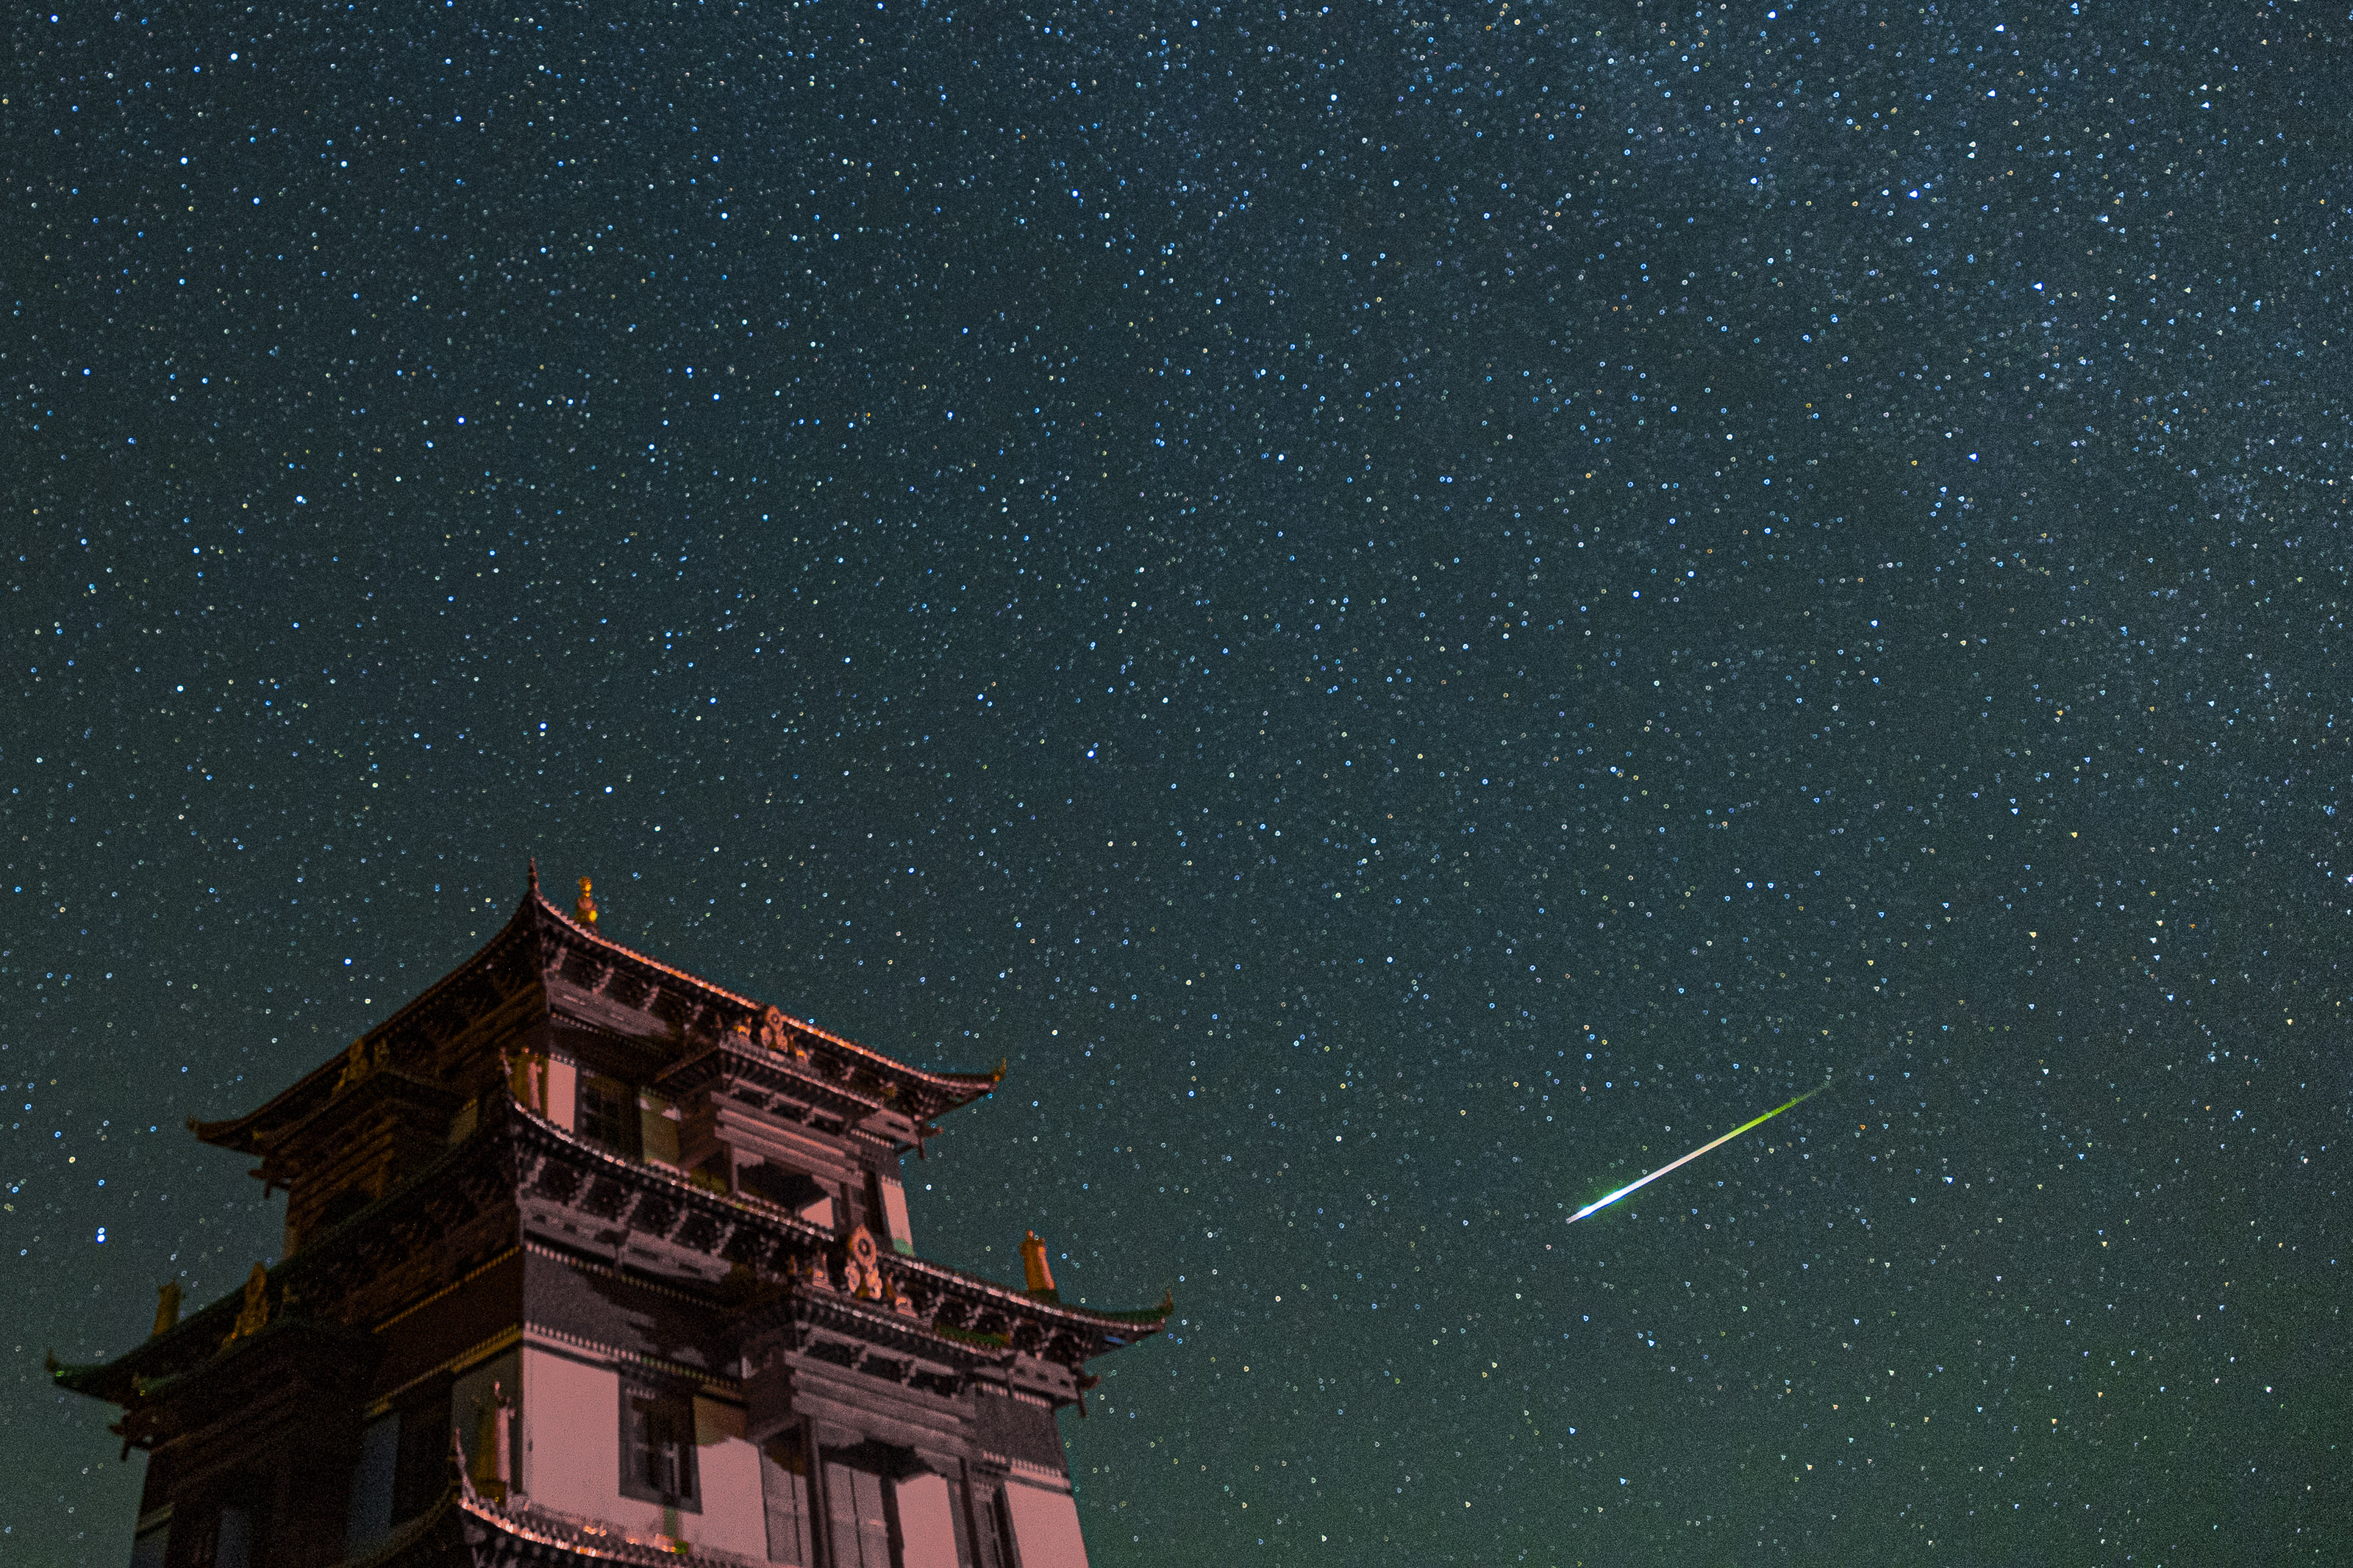 Um grande edifício à esquerda e um meteoro branco brilhante cruzando o céu estrelado.